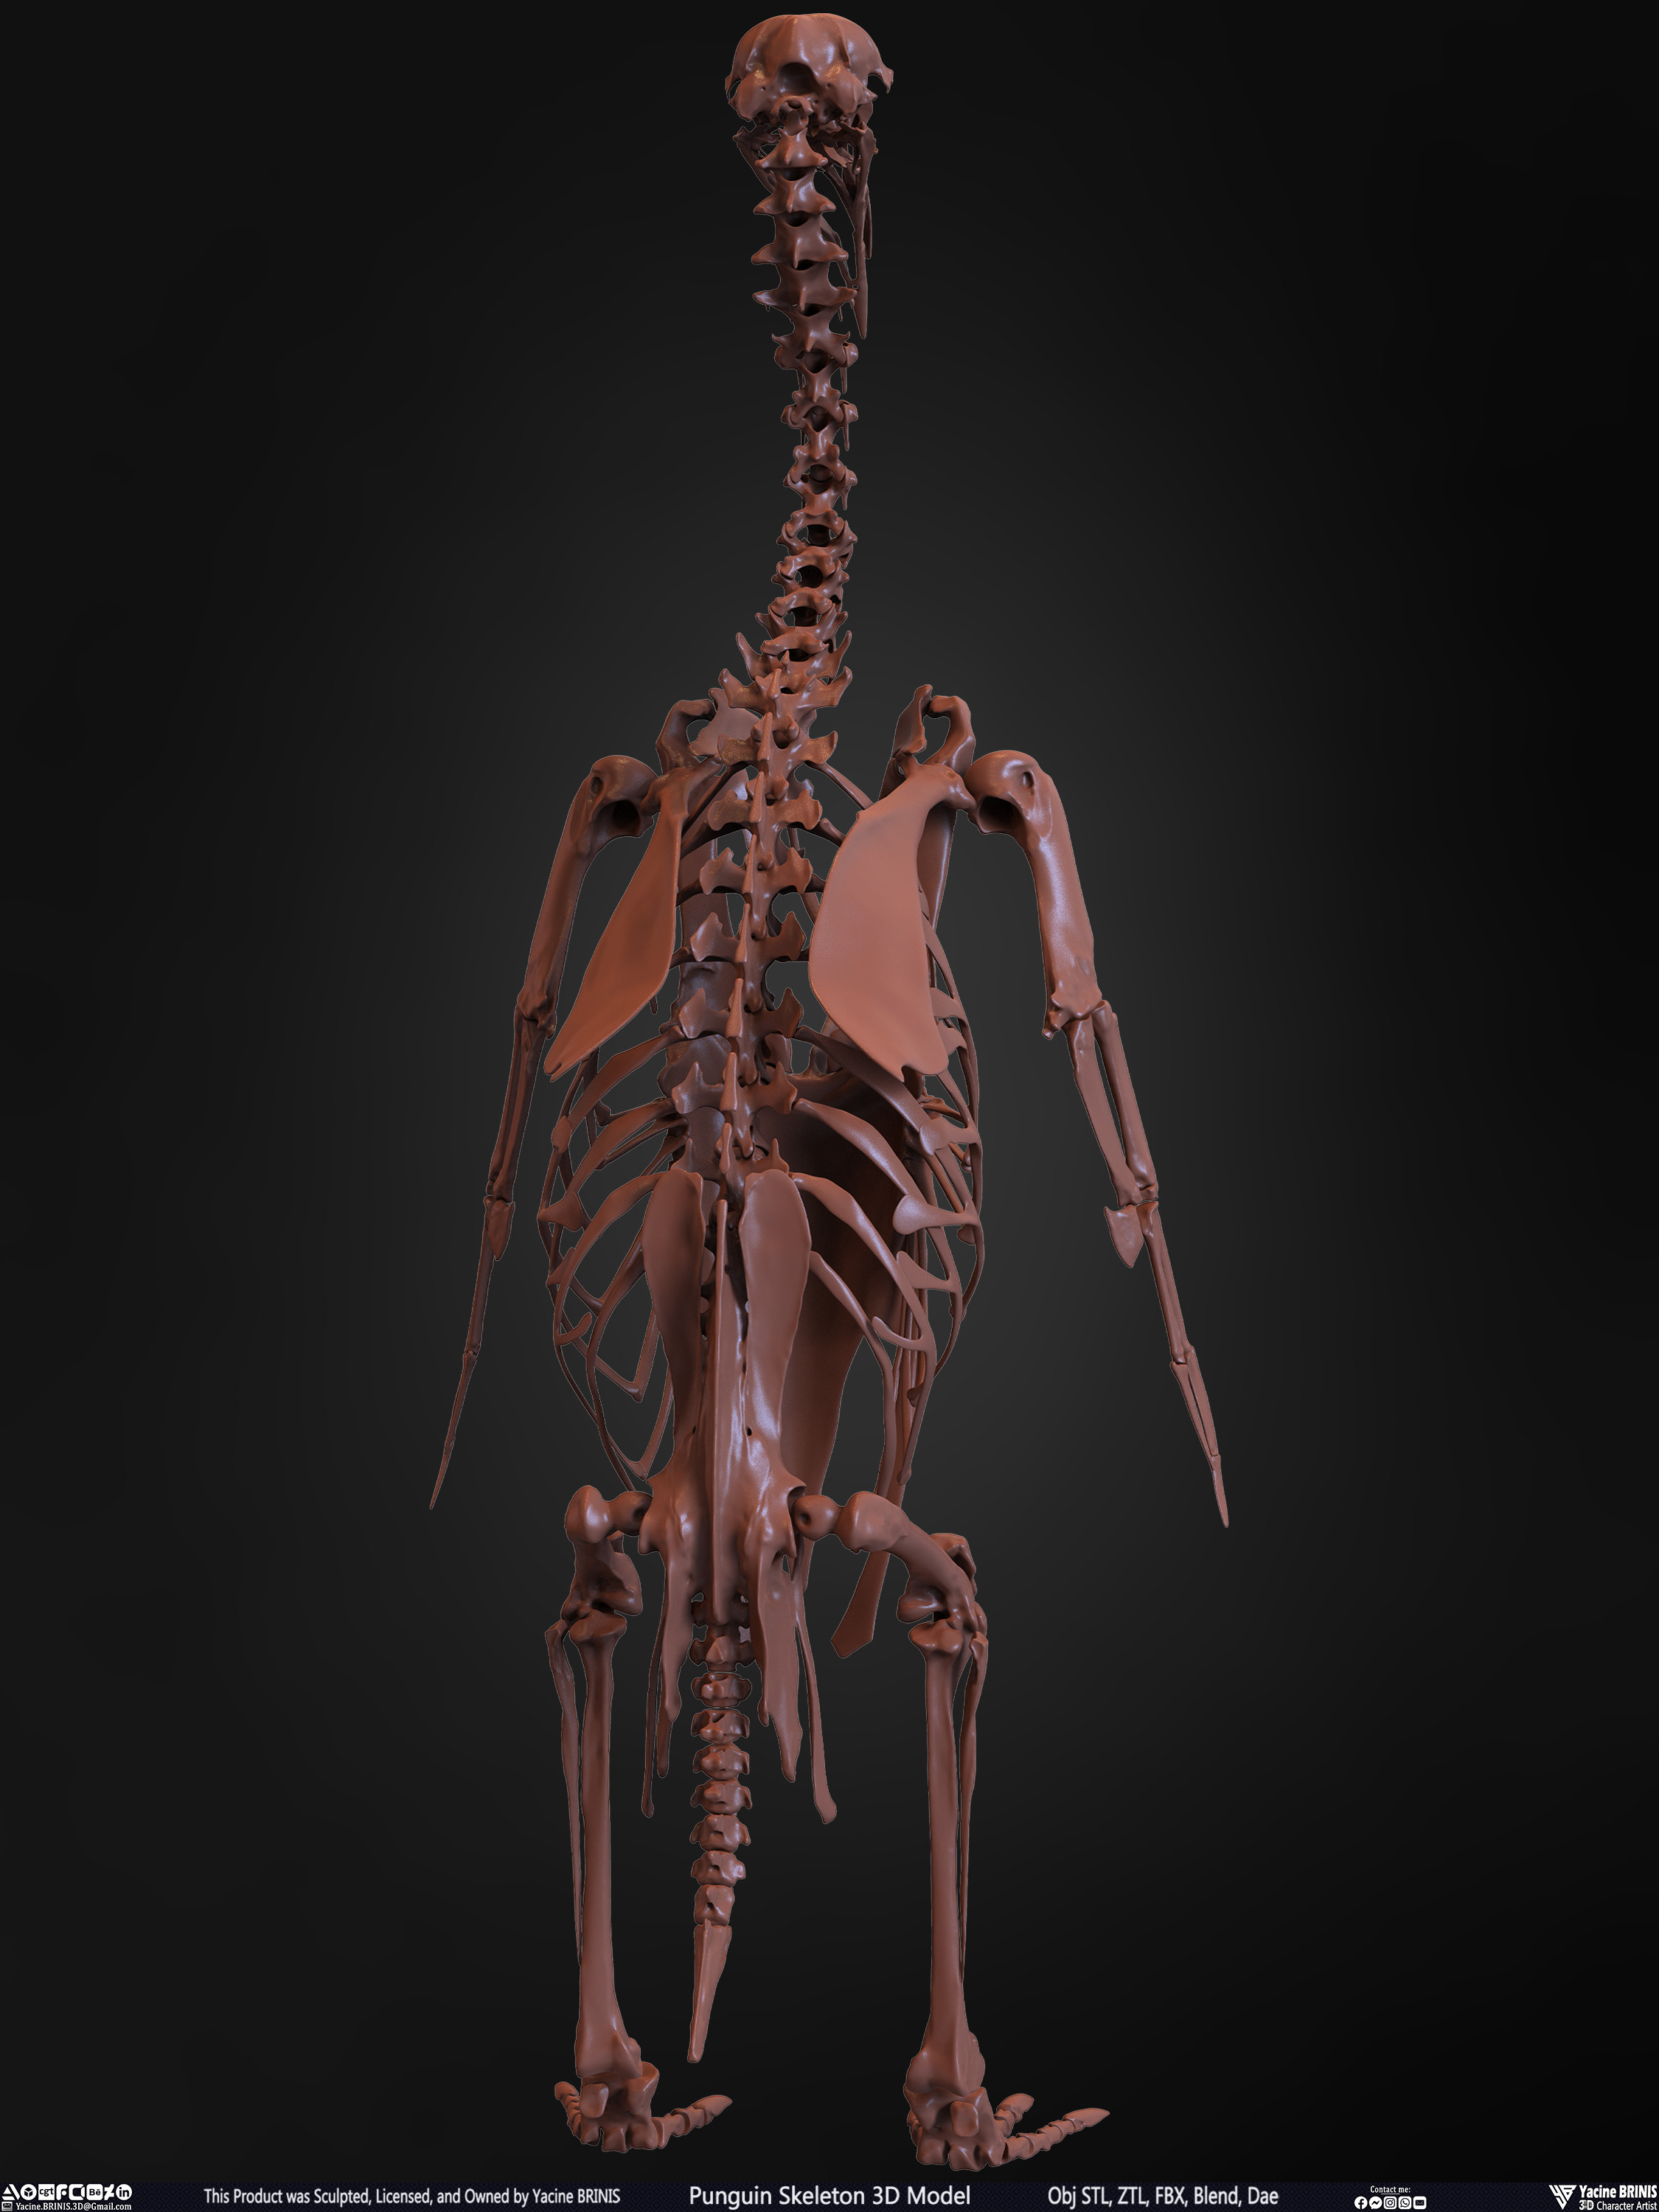 Penguin Skeleton 3D Model Sculpted by Yacine BRINIS Set 013